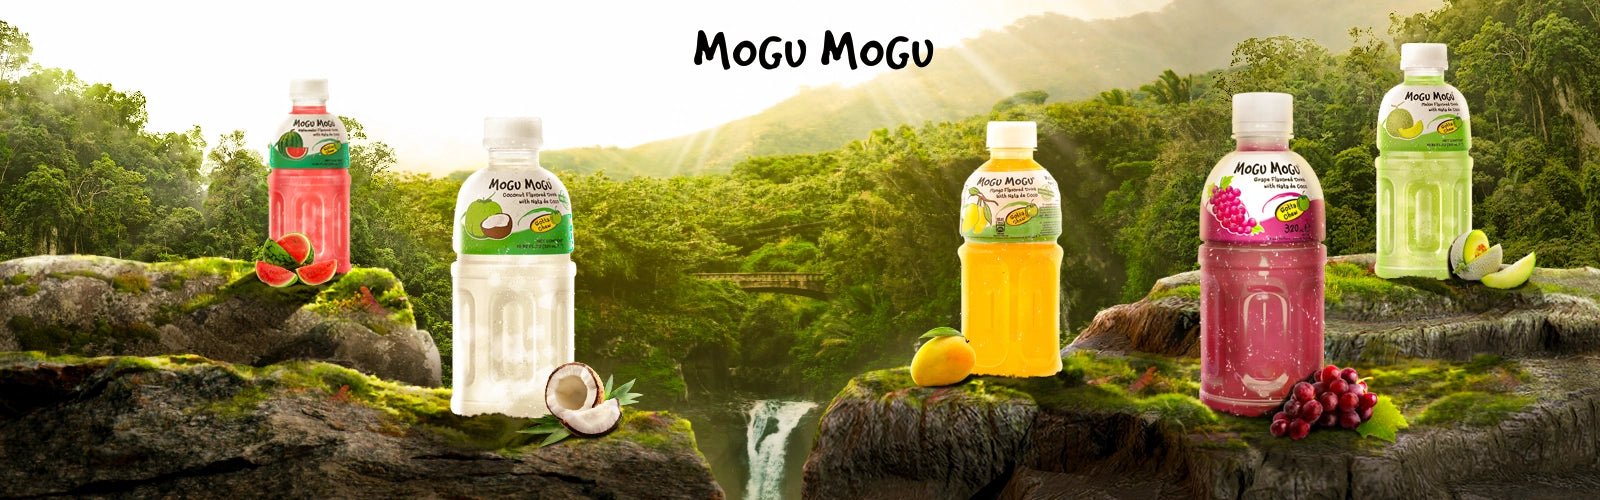 Mogu Mogu - Fast Candy